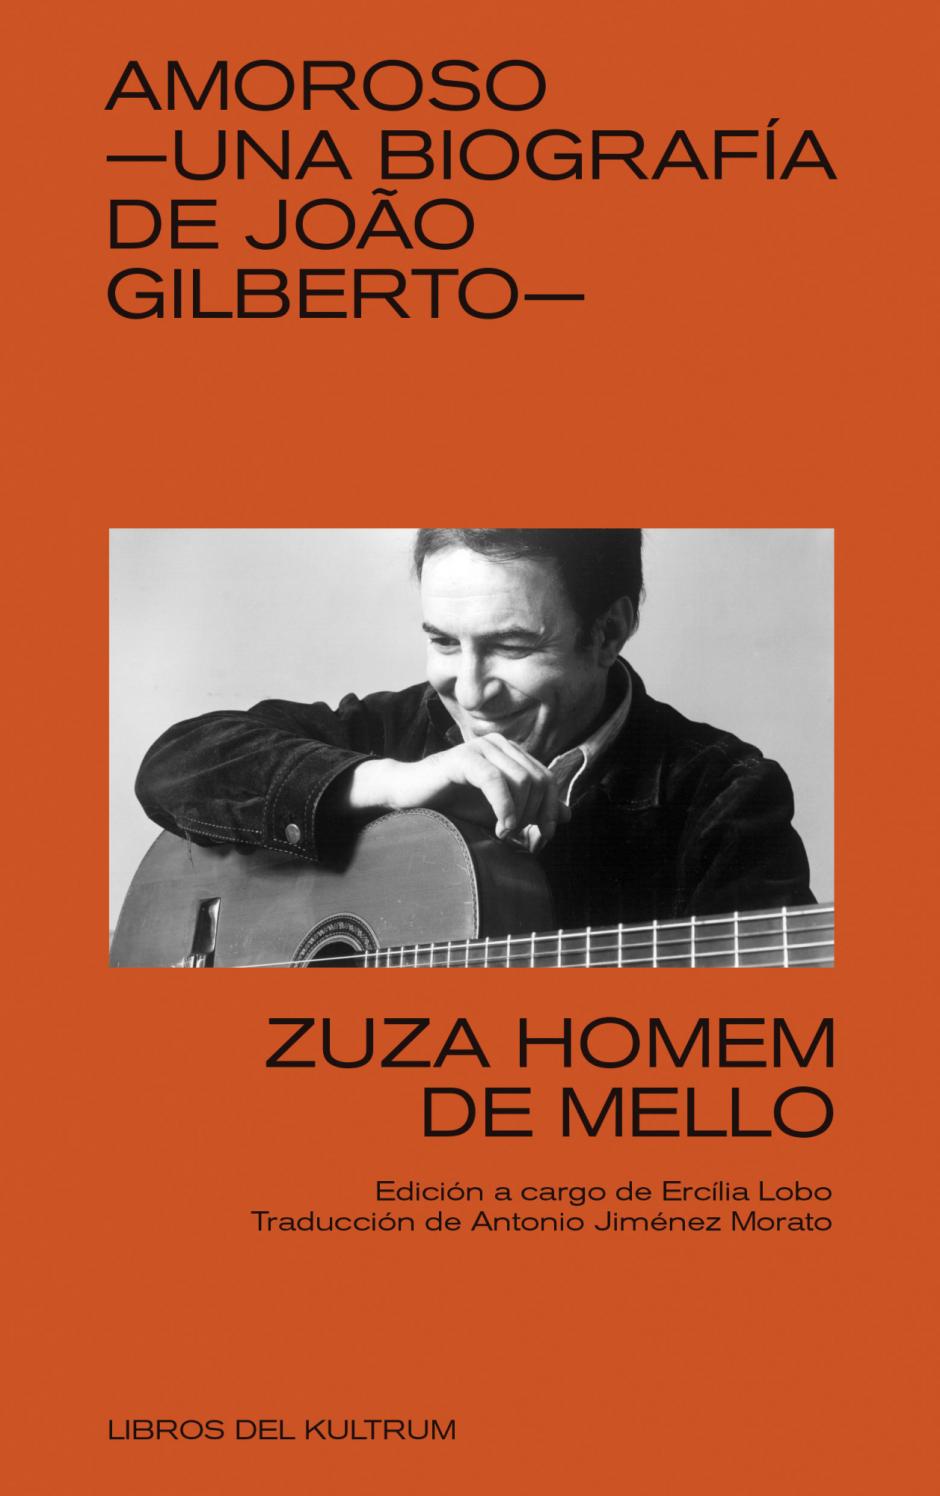 'Amoroso', la biografía de Joao Gilberto escrita por Zuza Hovem